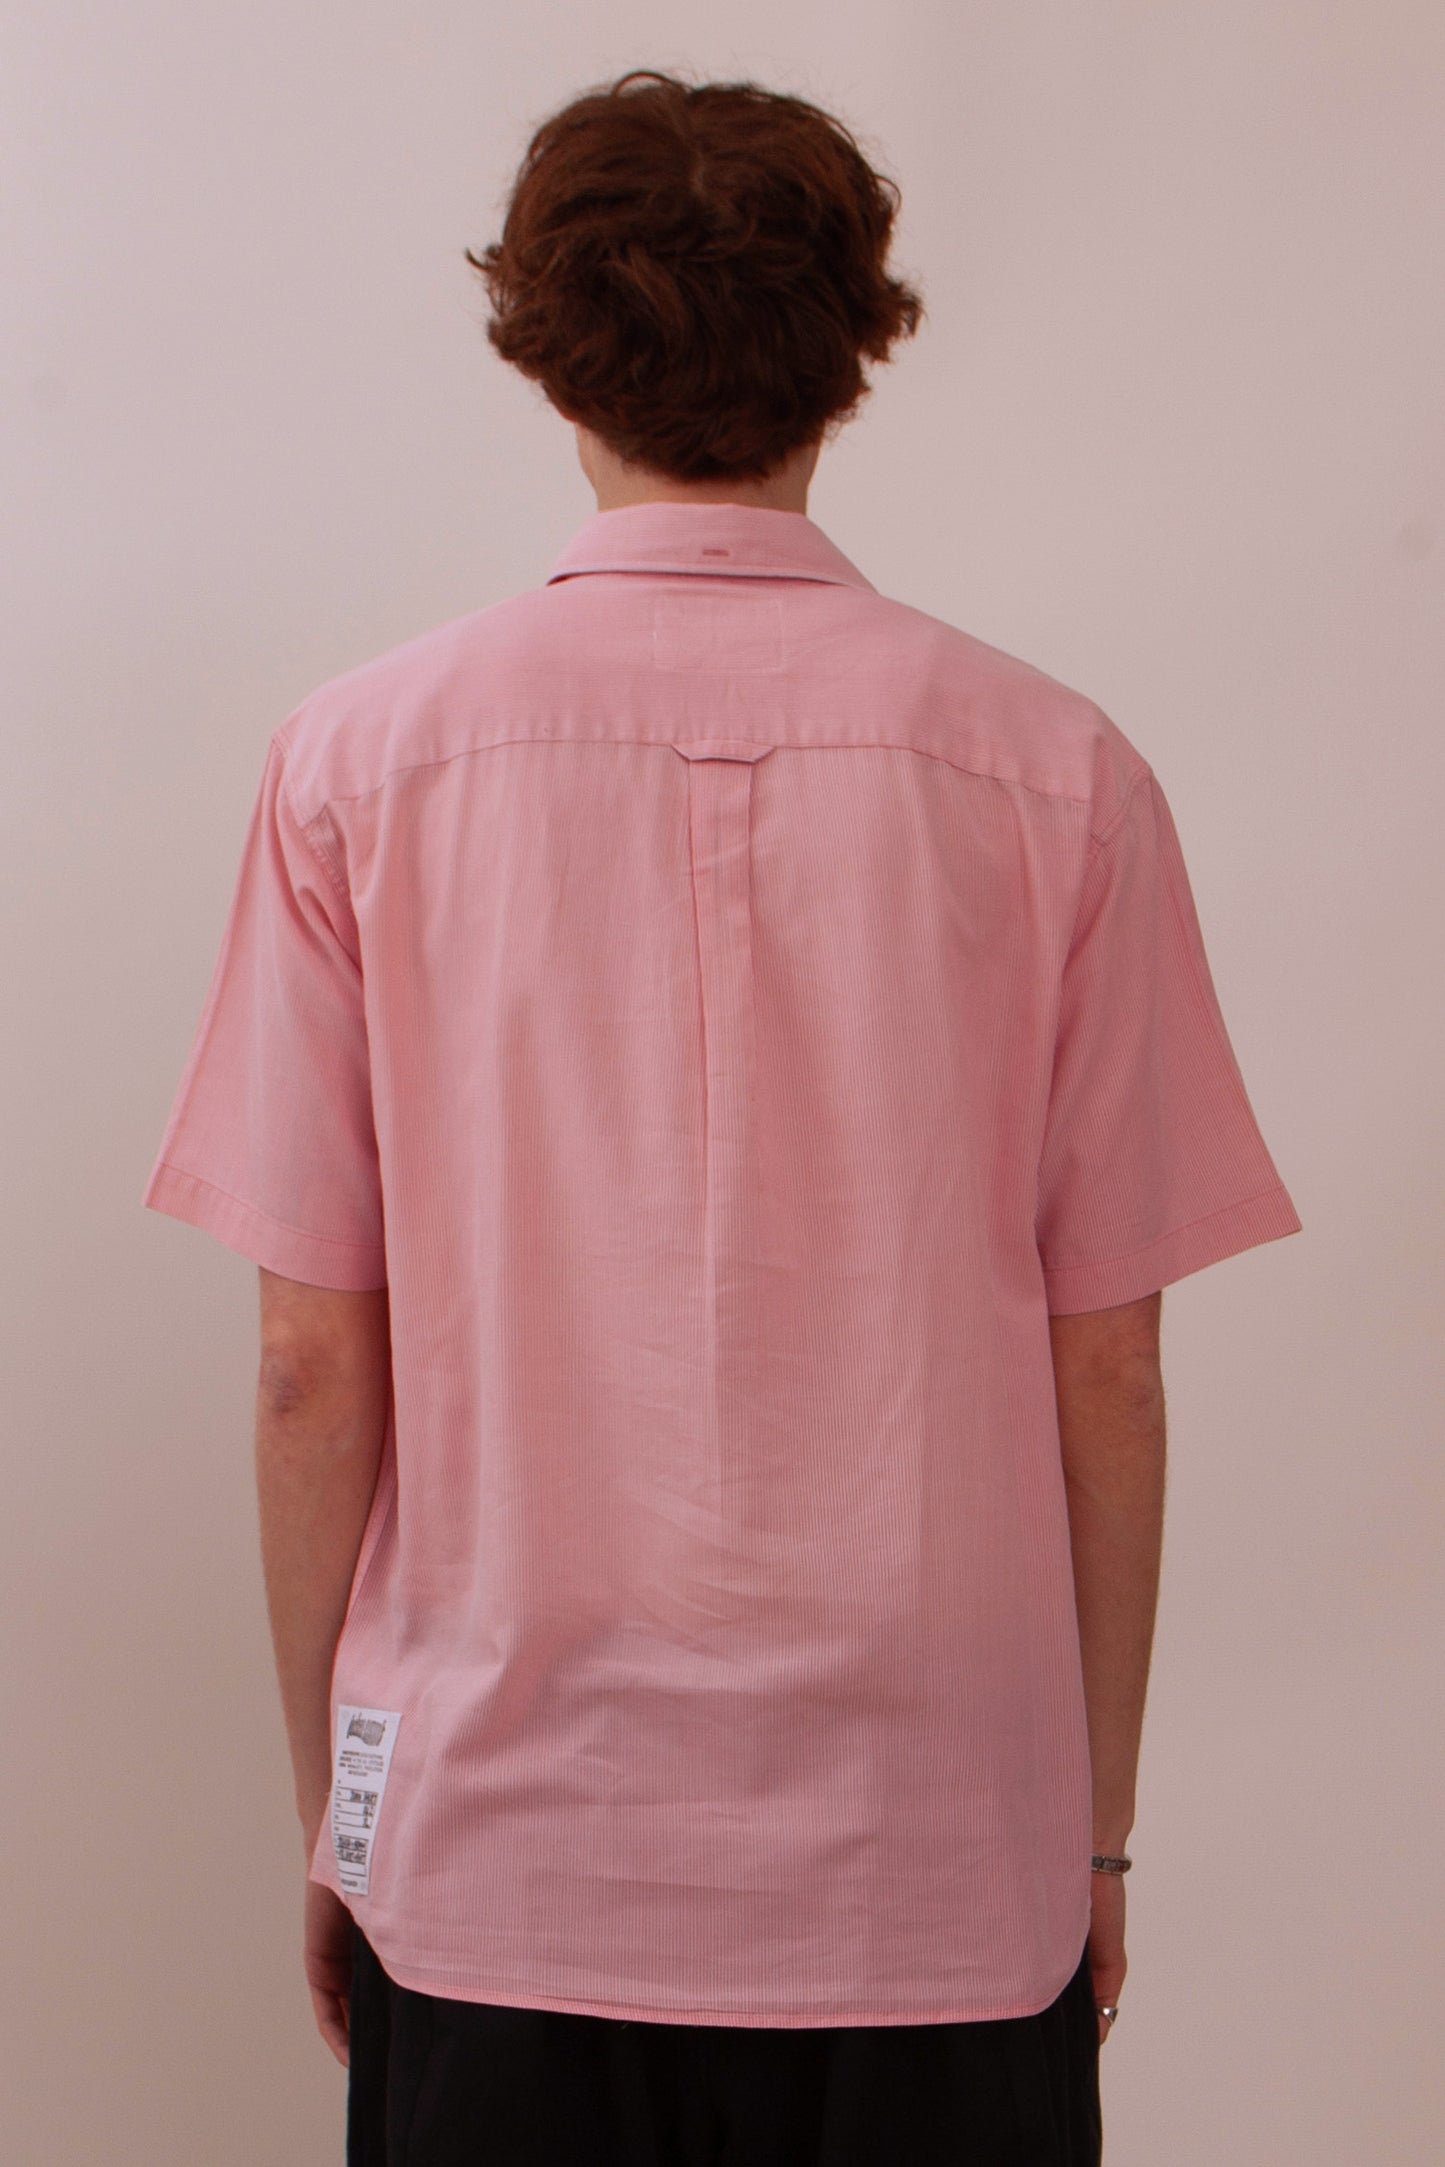 Junk Shirt 042 - XL